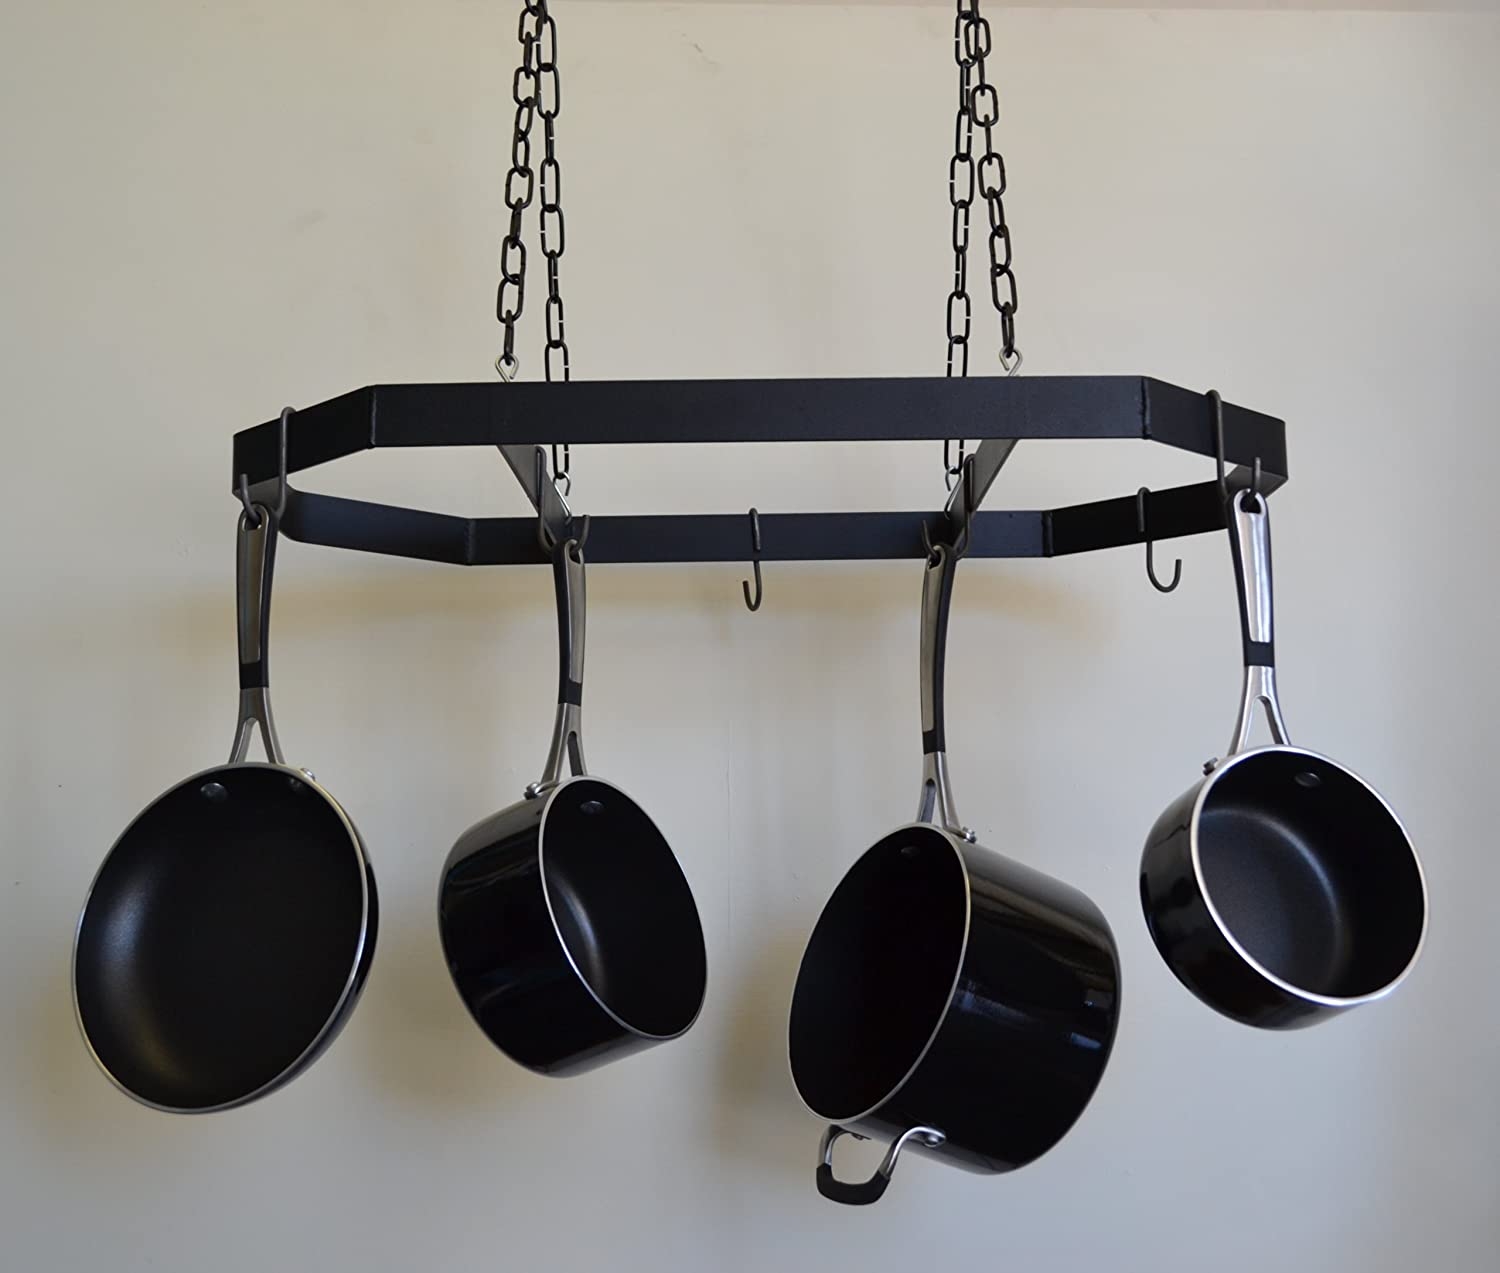 Hanging Pot and Pan Rack